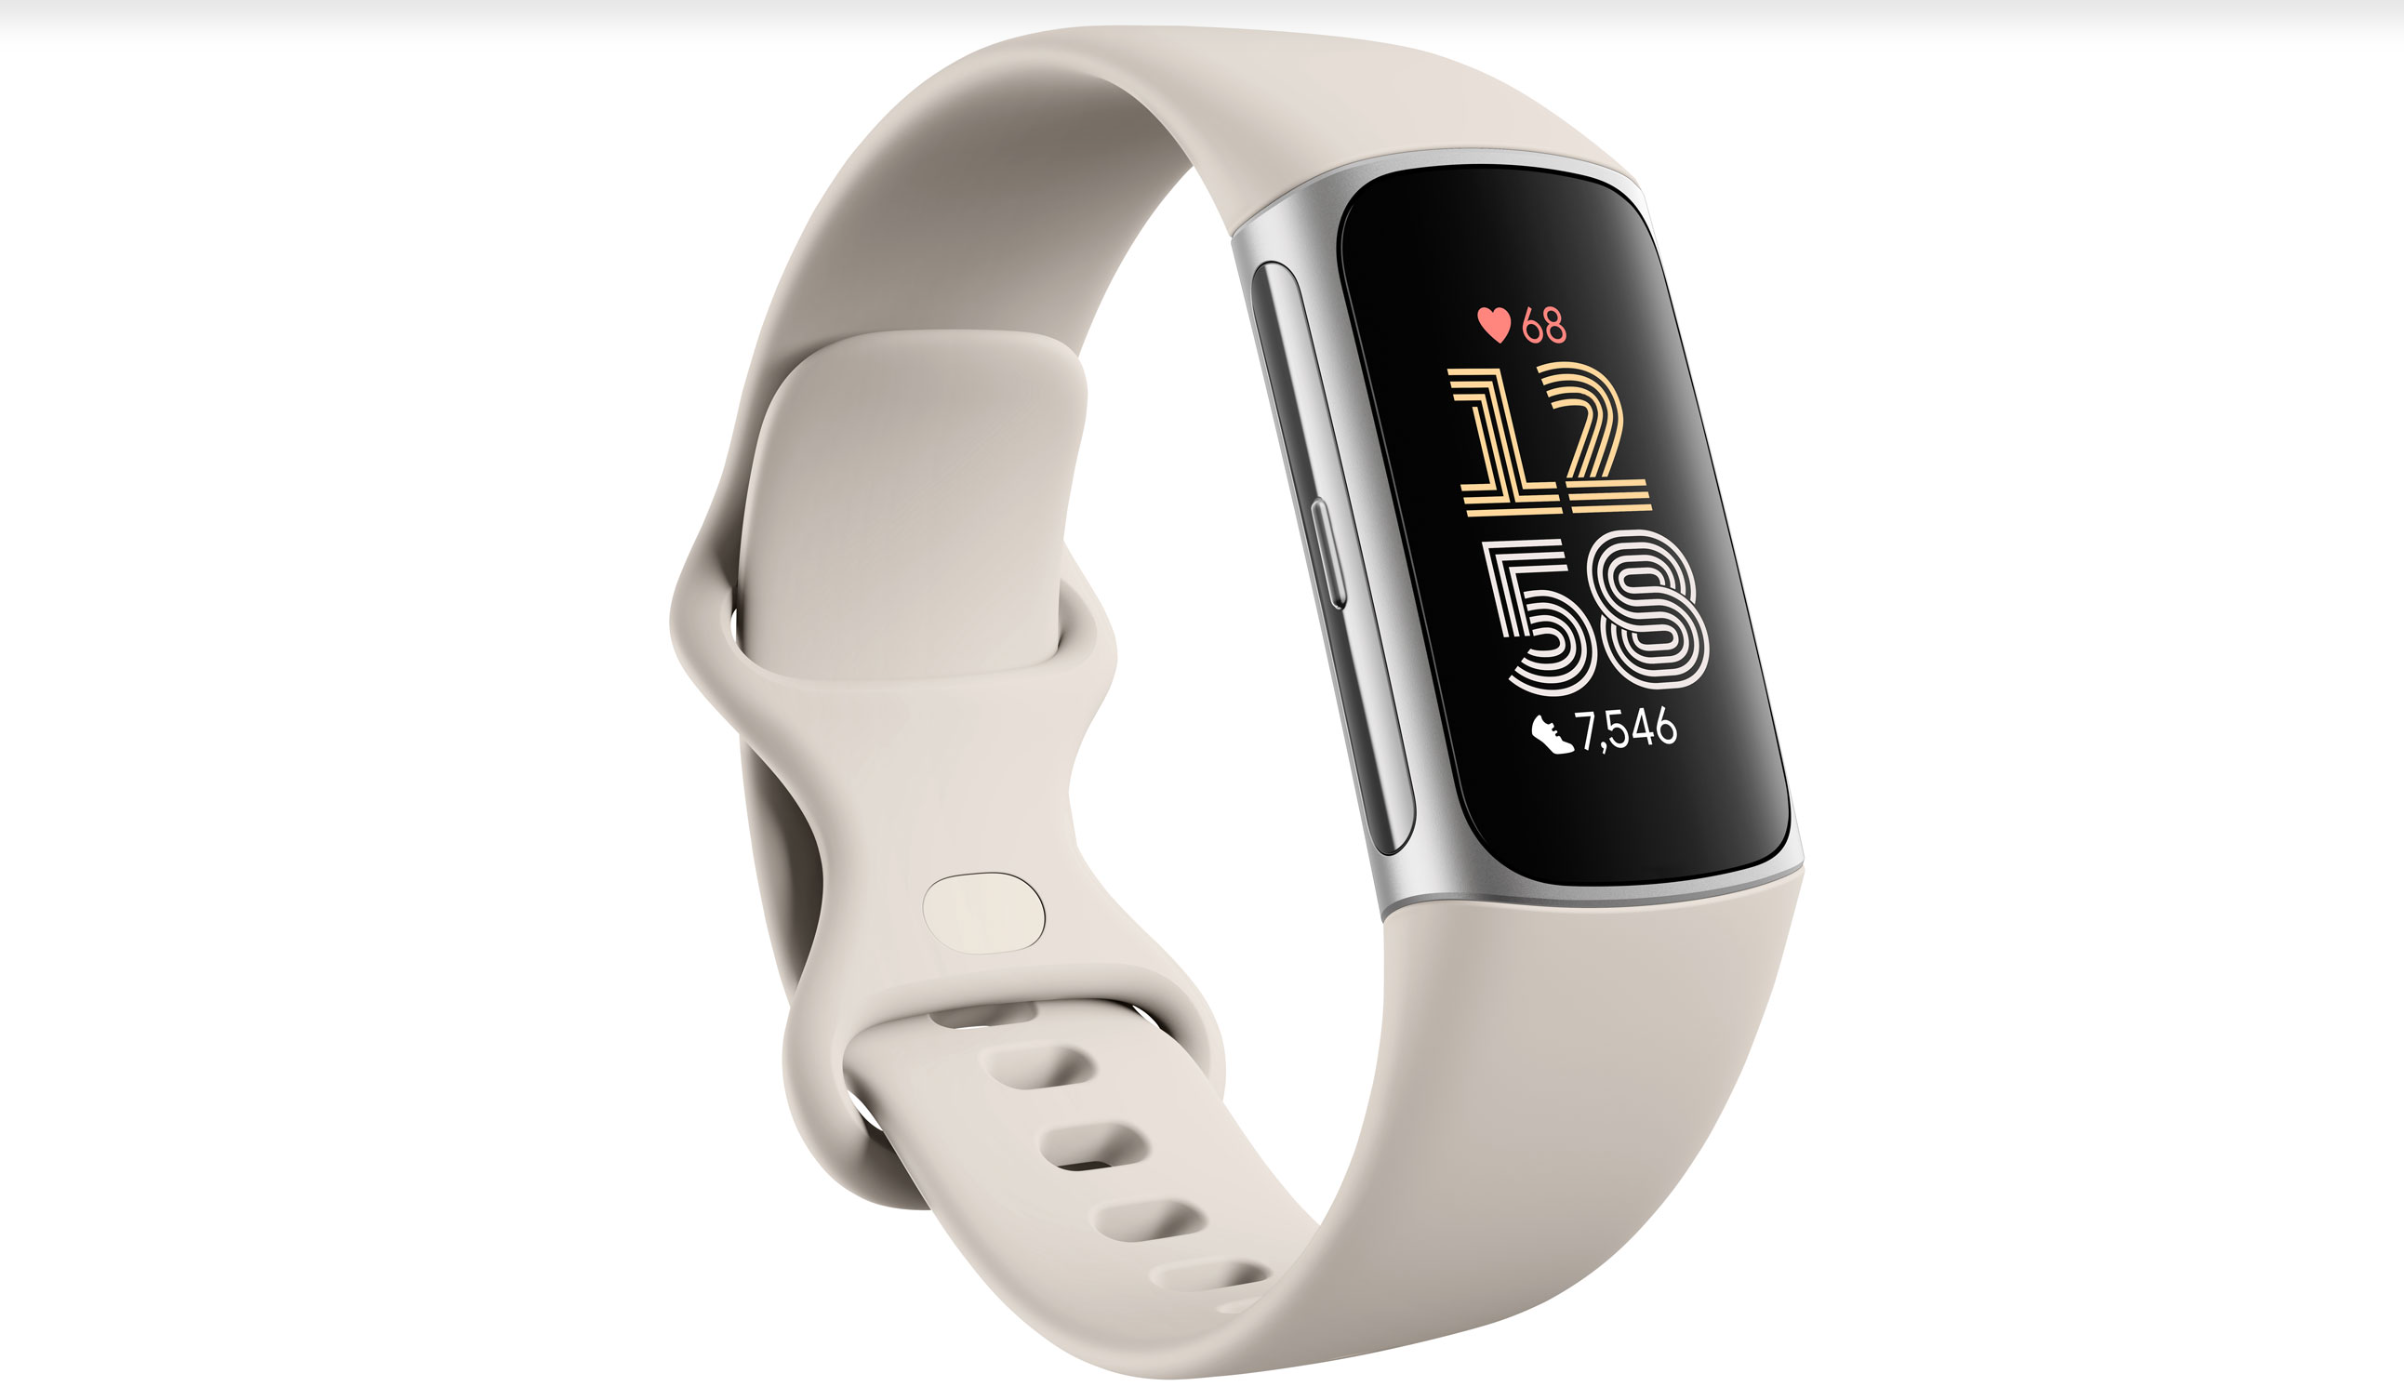 moniteur Fitbit avec écran couleur charge 6 bracelet couleur blanc